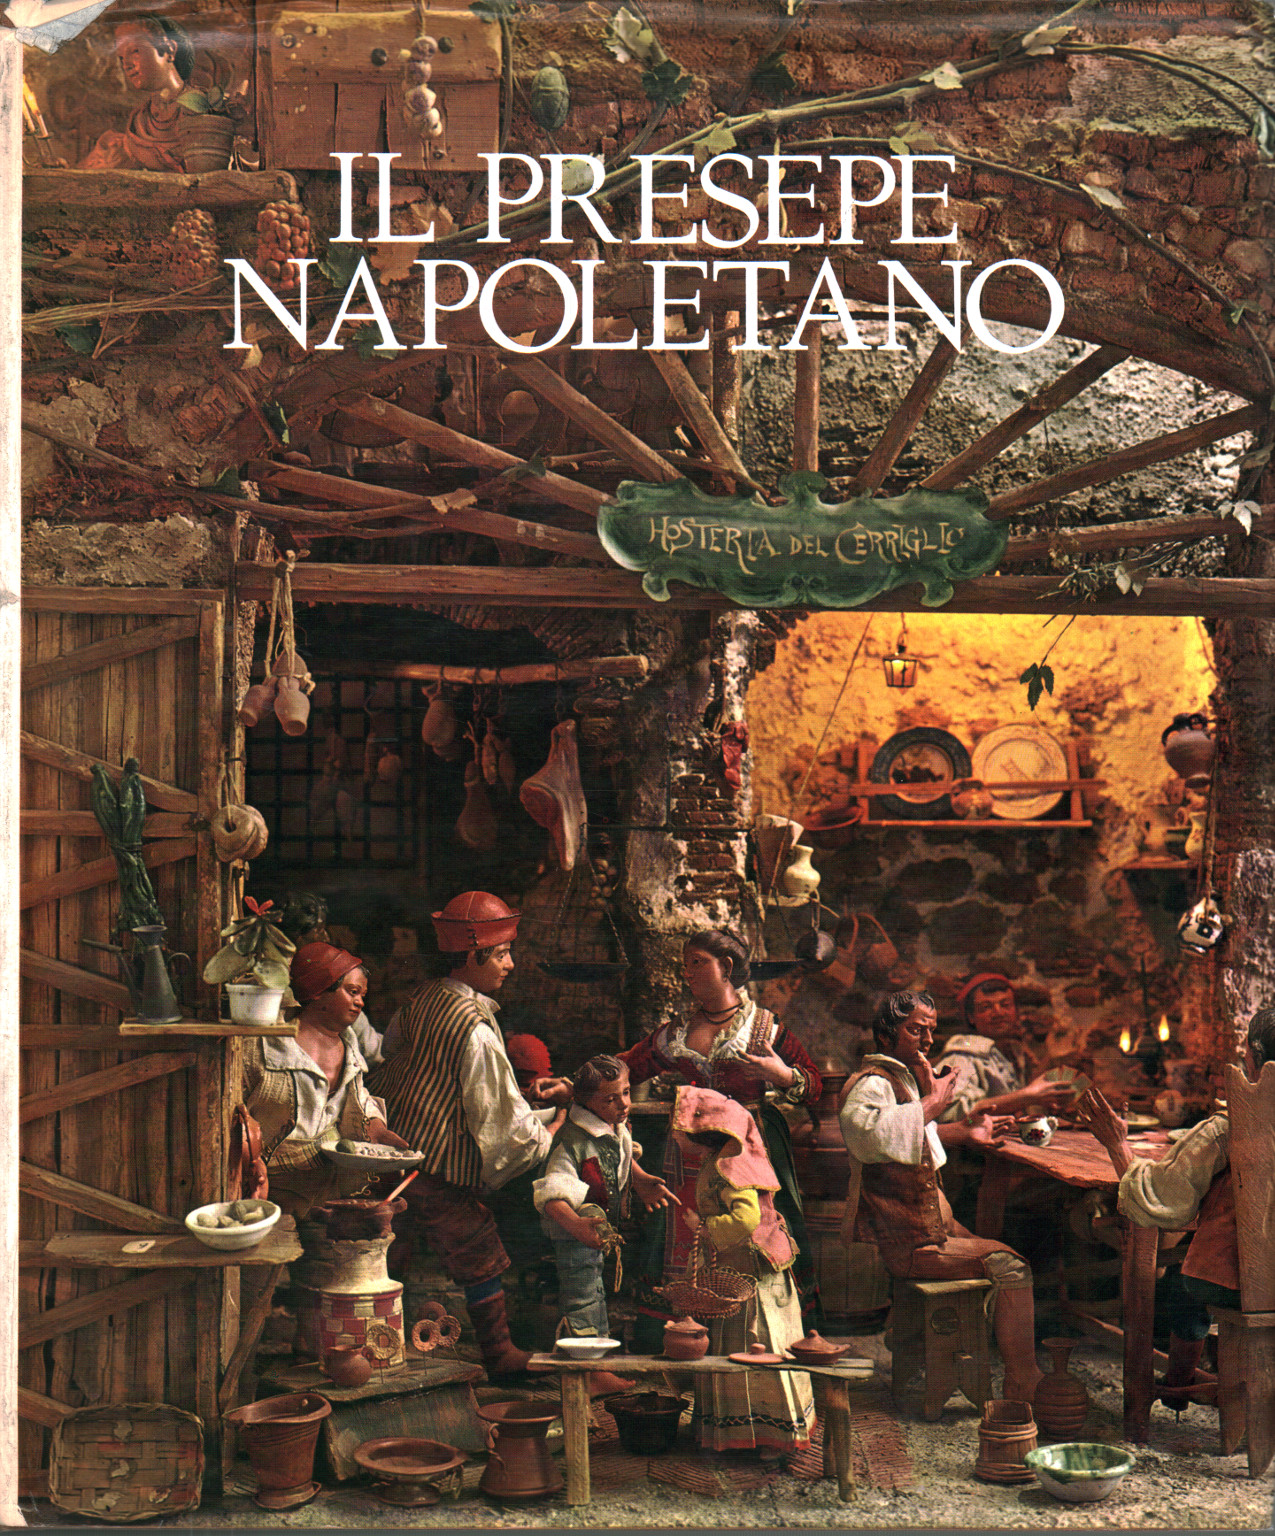 The Neapolitan nativity scene, Gennaro Borelli